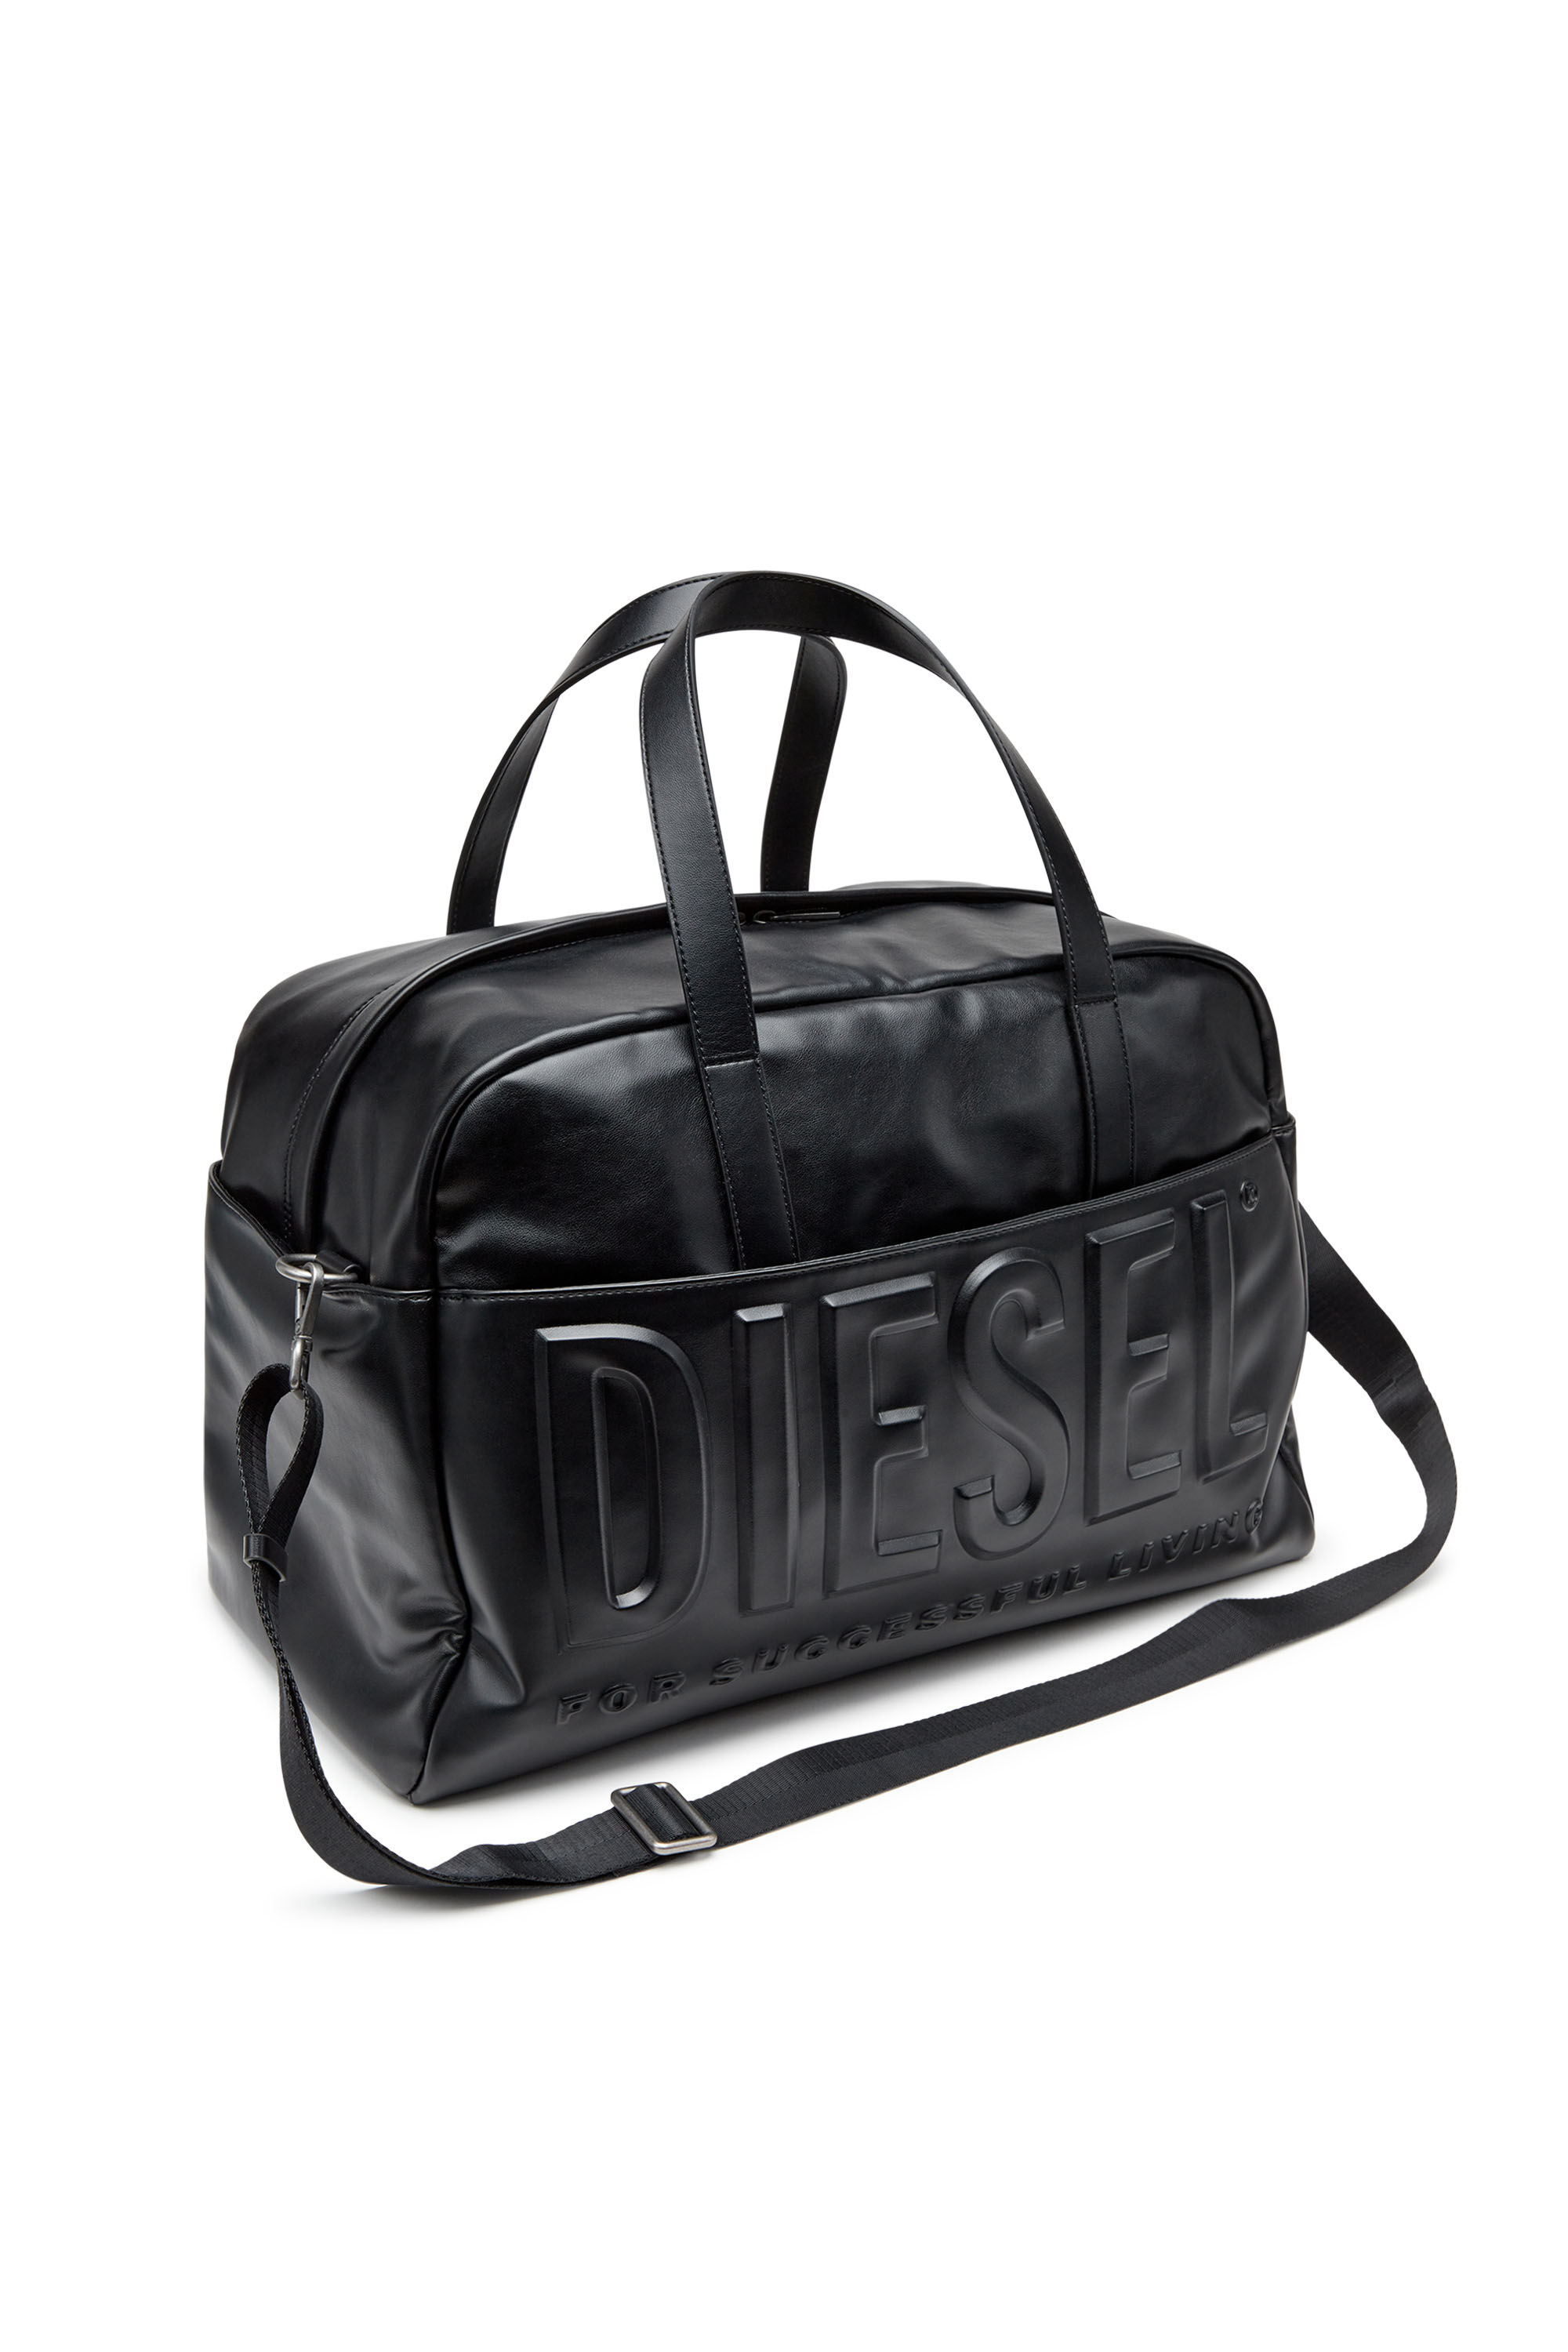 Dsl 3D Duffle L X Travel Bag - Talego con logotipo 3D extremo 